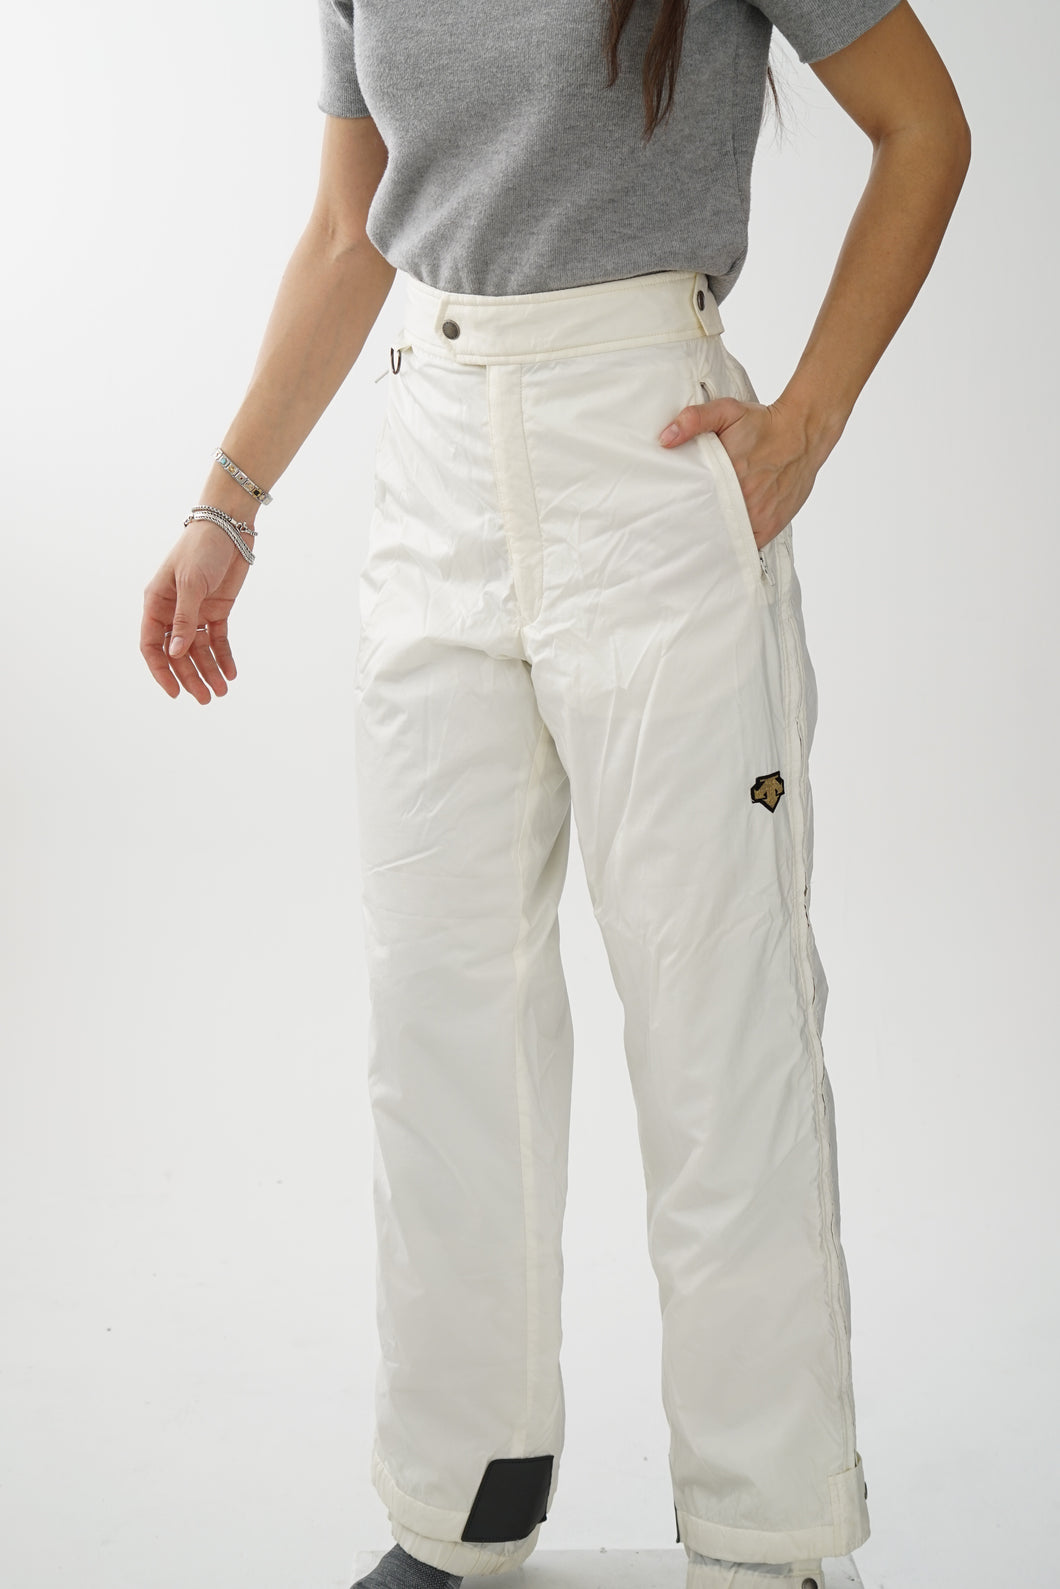 Pantalon de neige vintage Descente off-white unisex taille 34 (M)